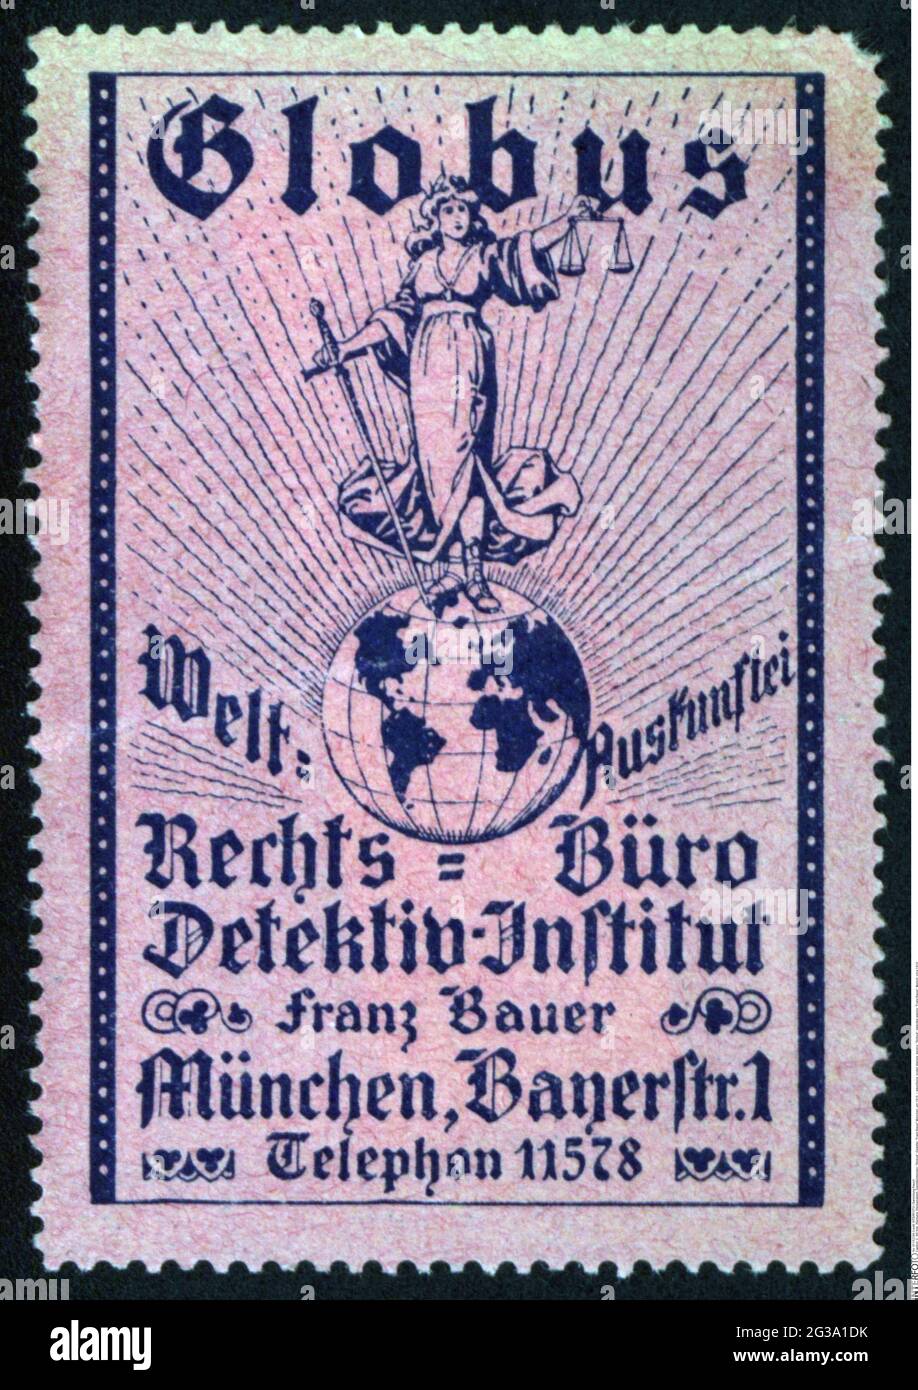 publicidad, estampillas de cartel, servicio, 'Globus', agencia de detectives, 'Franz Bauer', Munich, alrededor de 1910, DERECHOS ADICIONALES-AUTORIZACIÓN-INFORMACIÓN-NO DISPONIBLE Foto de stock